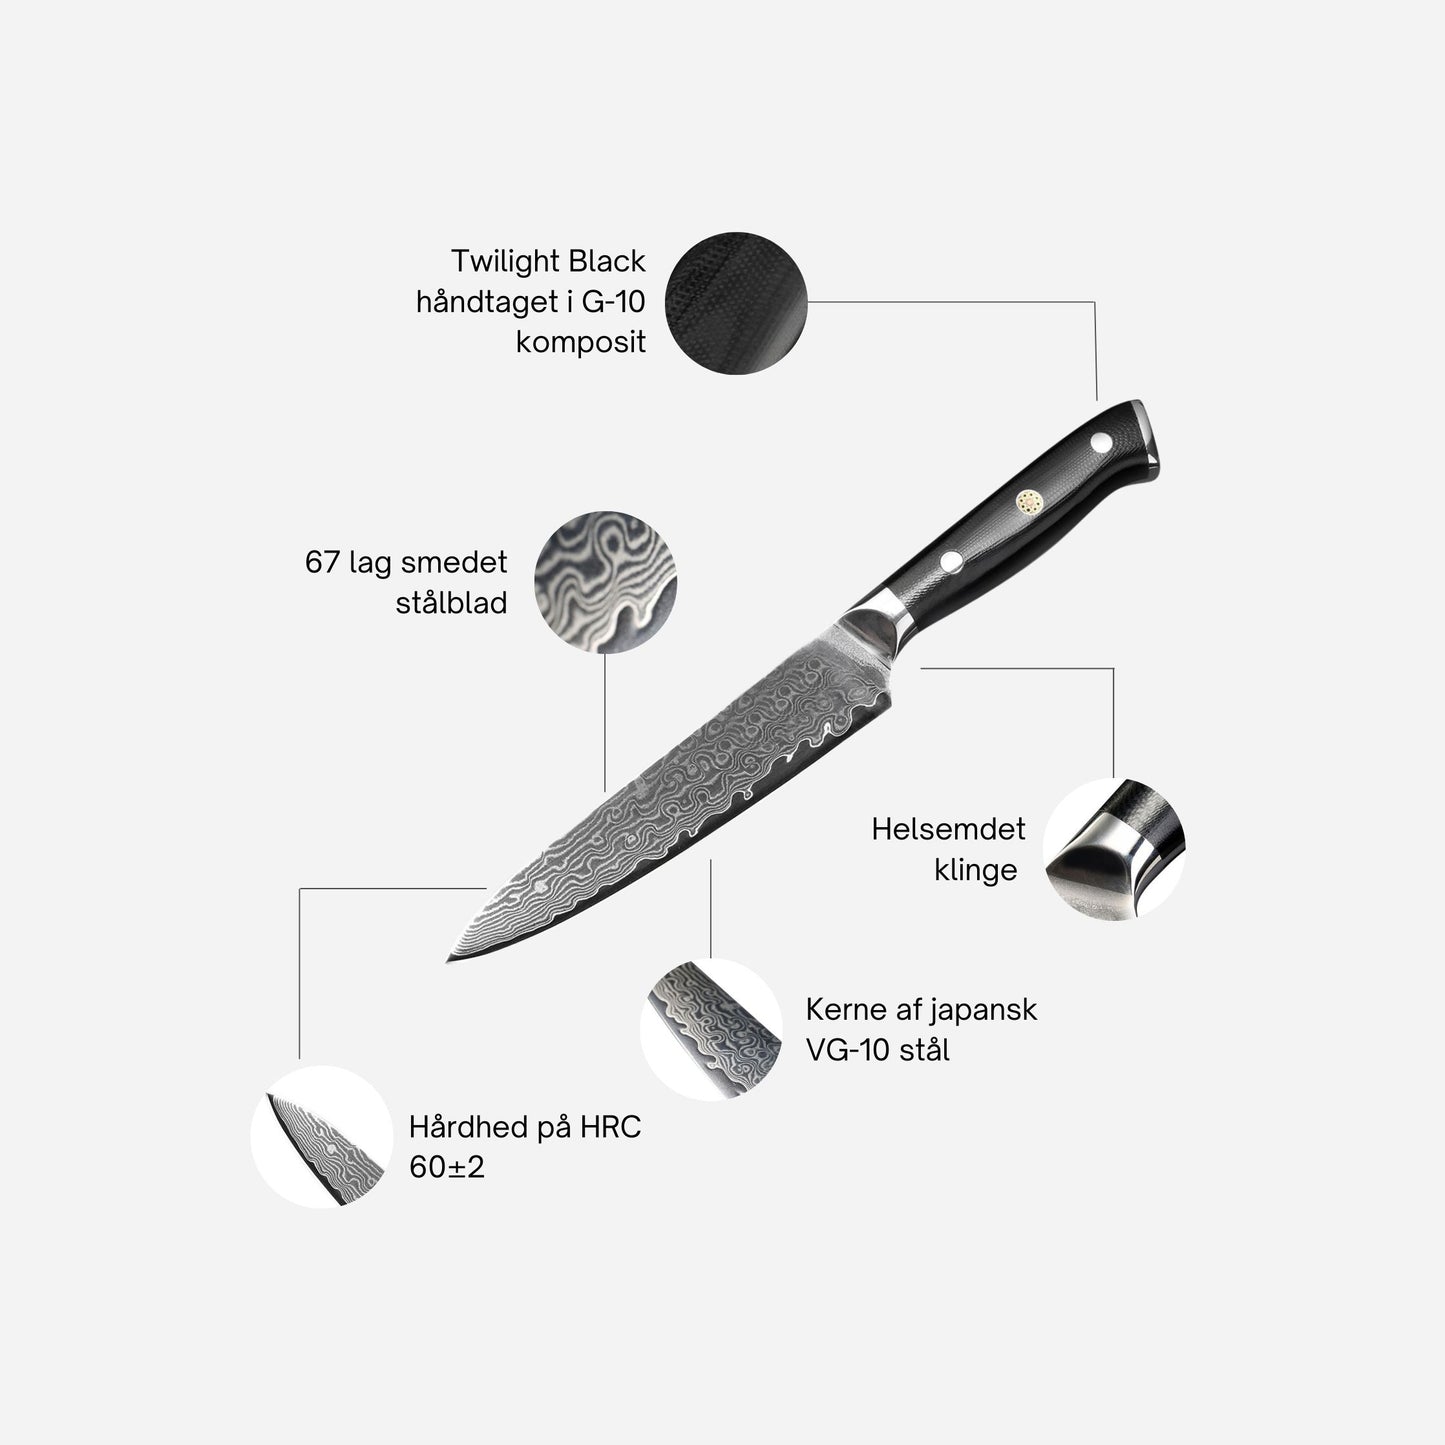 Komorebis Utilitykniv er multifunktionel og kan bruges til et utal af mindre skæreopgaver, hvor du har brug for at få et sikkert og præcist snit